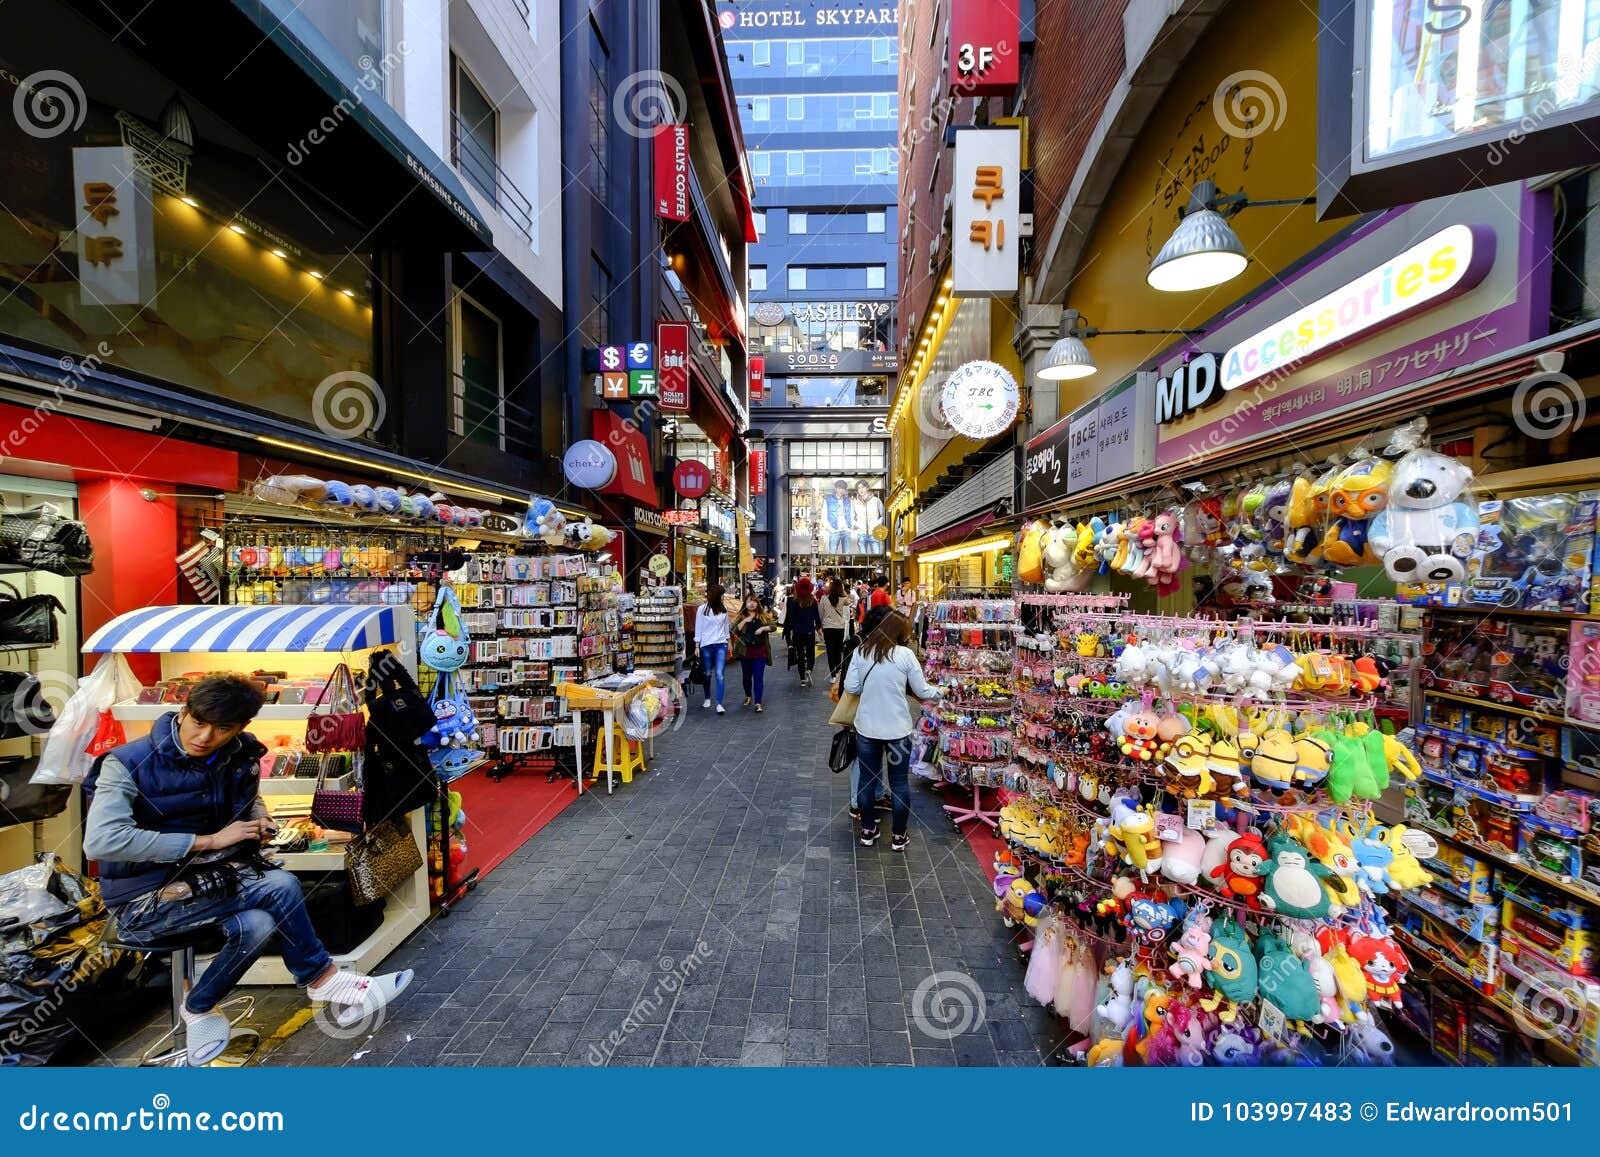 Myeong Shopping  Street Korea  Editorial Stock Photo 